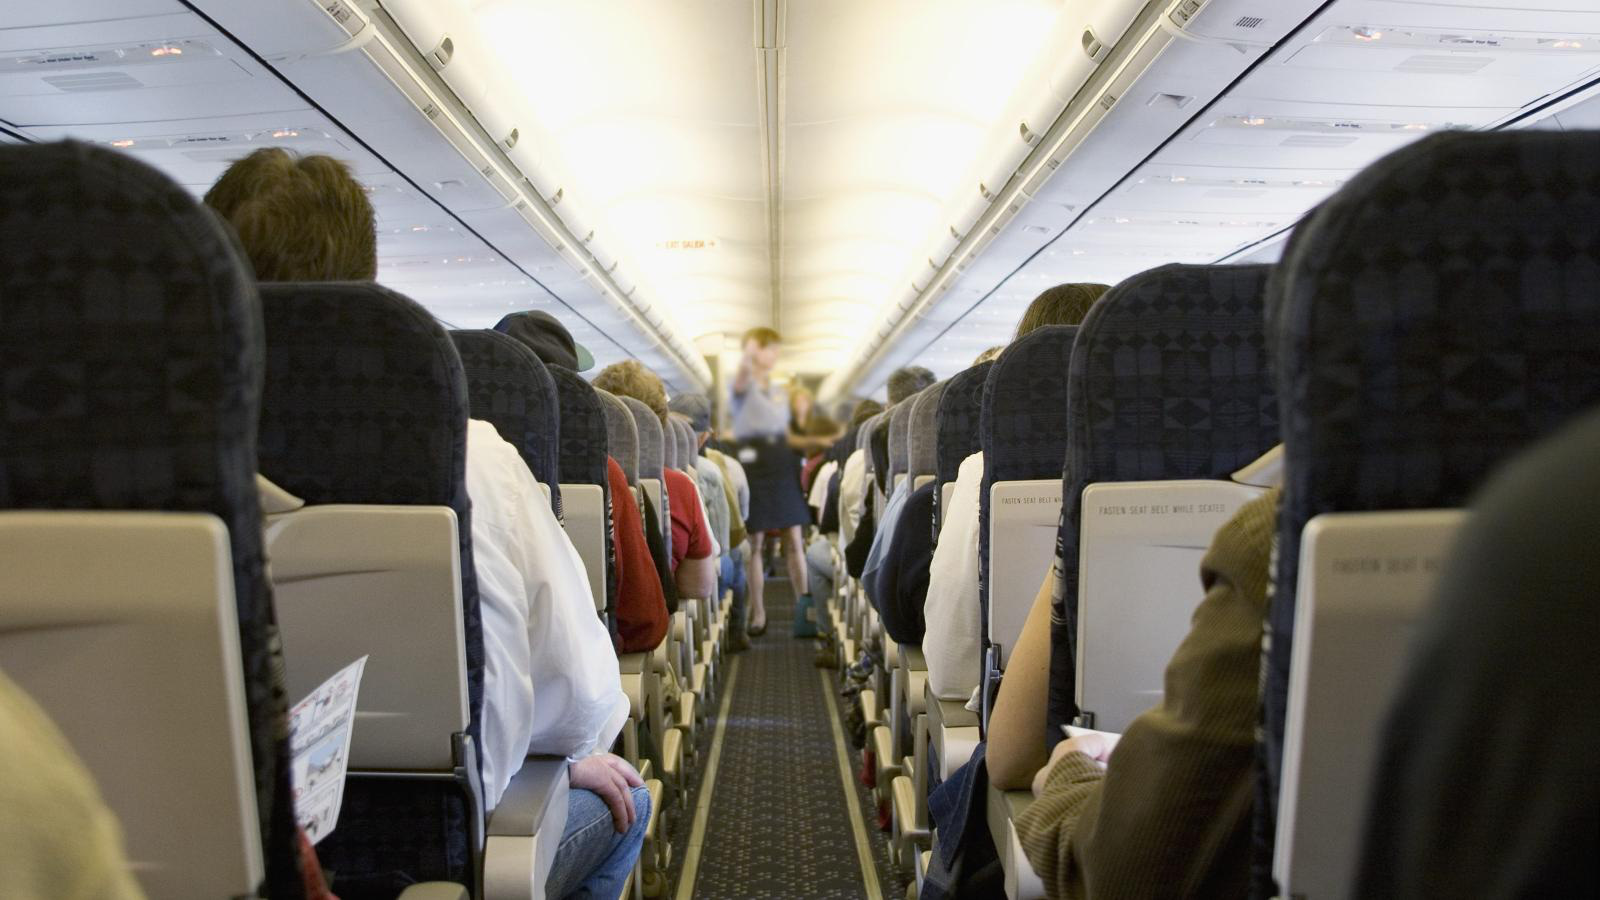 Không khí trên máy bay không dễ lây lan virus cúm như bạn tưởng, có khi ngồi xe bus còn kém an toàn hơn - Ảnh 1.